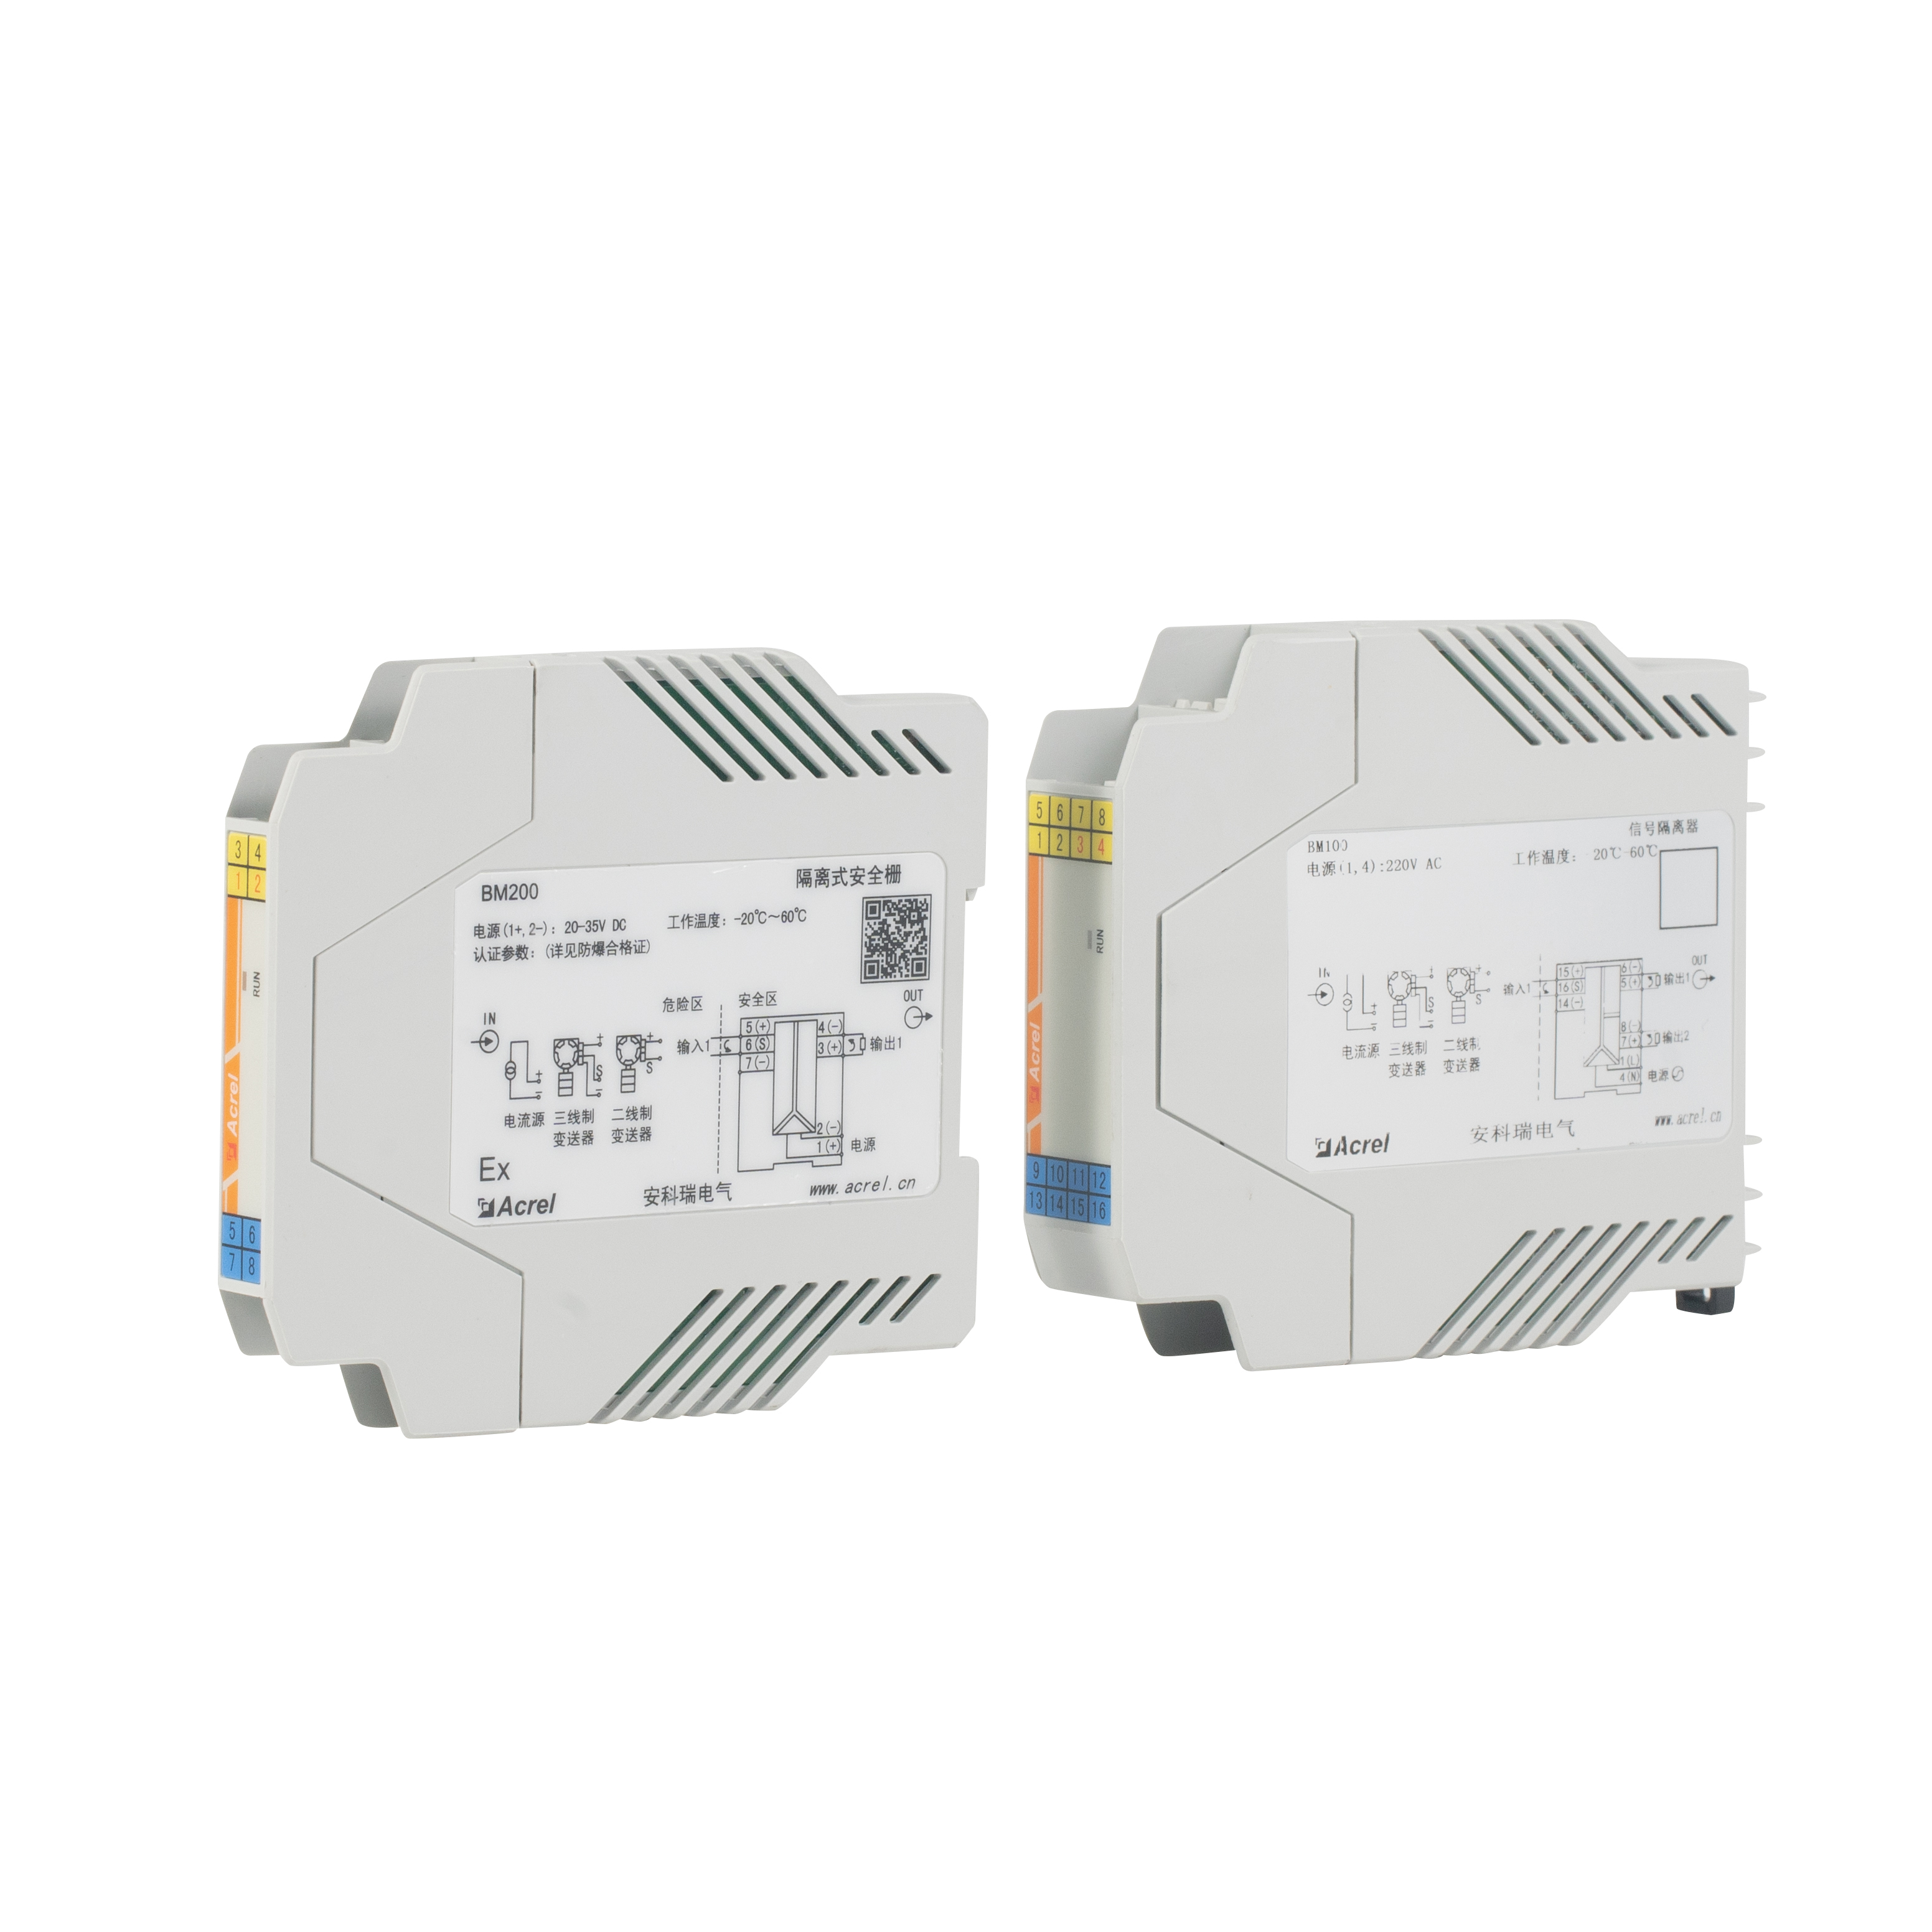 防护等级IP20电压信号隔离式安全栅BM200-DV/V-B11